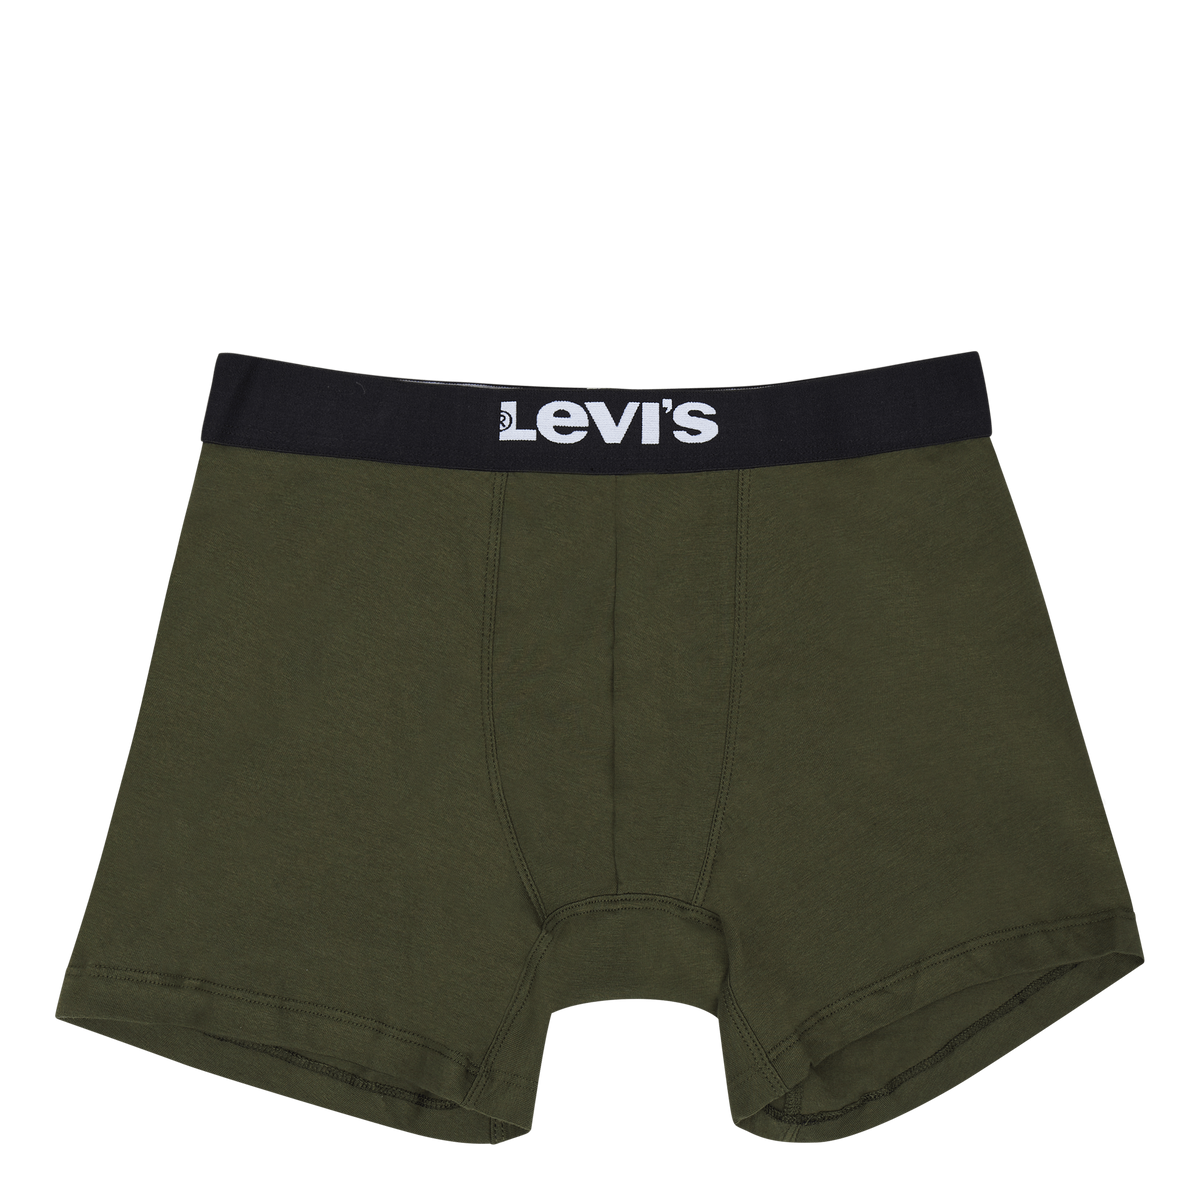 Levis Men Solid Basic Boxer Br 012 Khaki